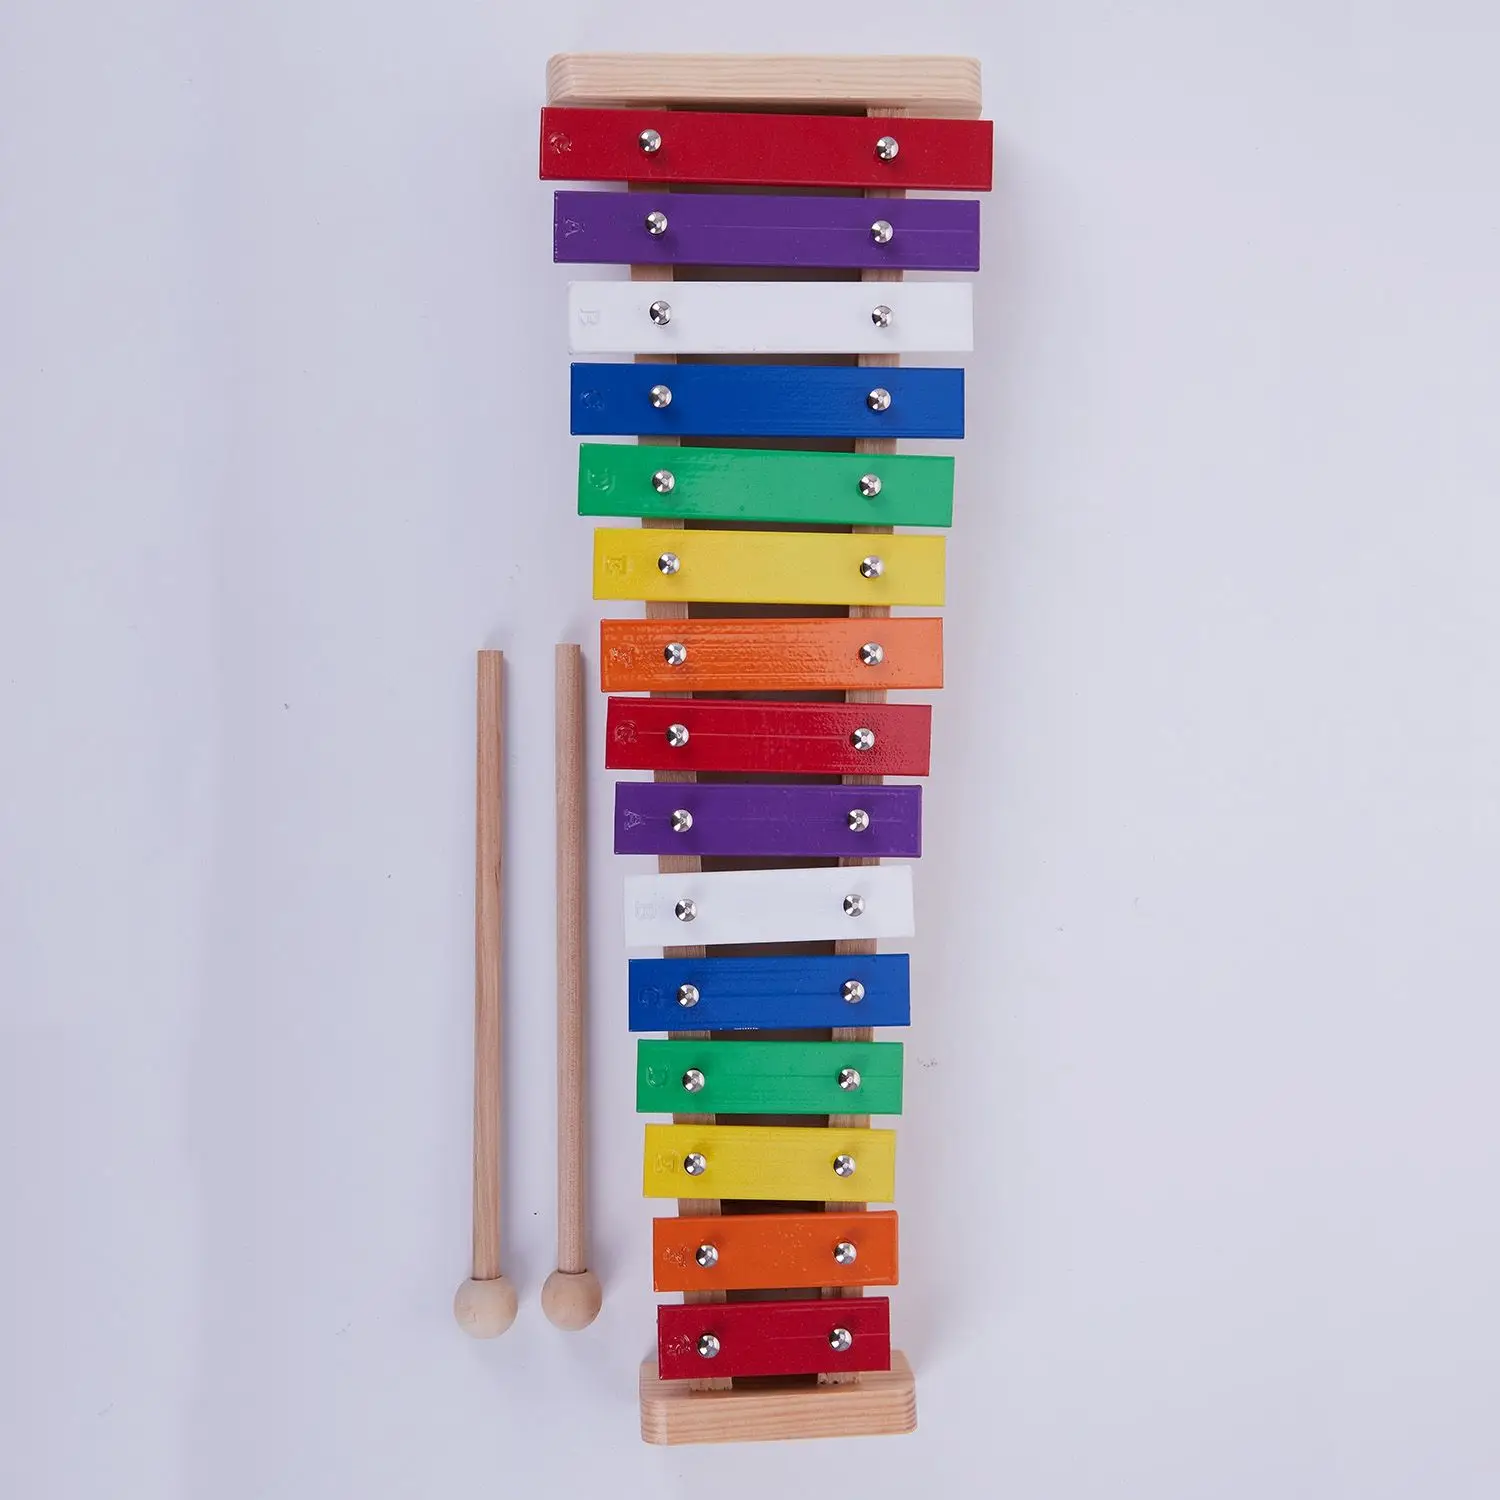 15-Note деревянные музыкальные игрушки обучающая помощь раннее развитие детей образовательная ксилофон алюминиевая пластина фортепиано перкуссия